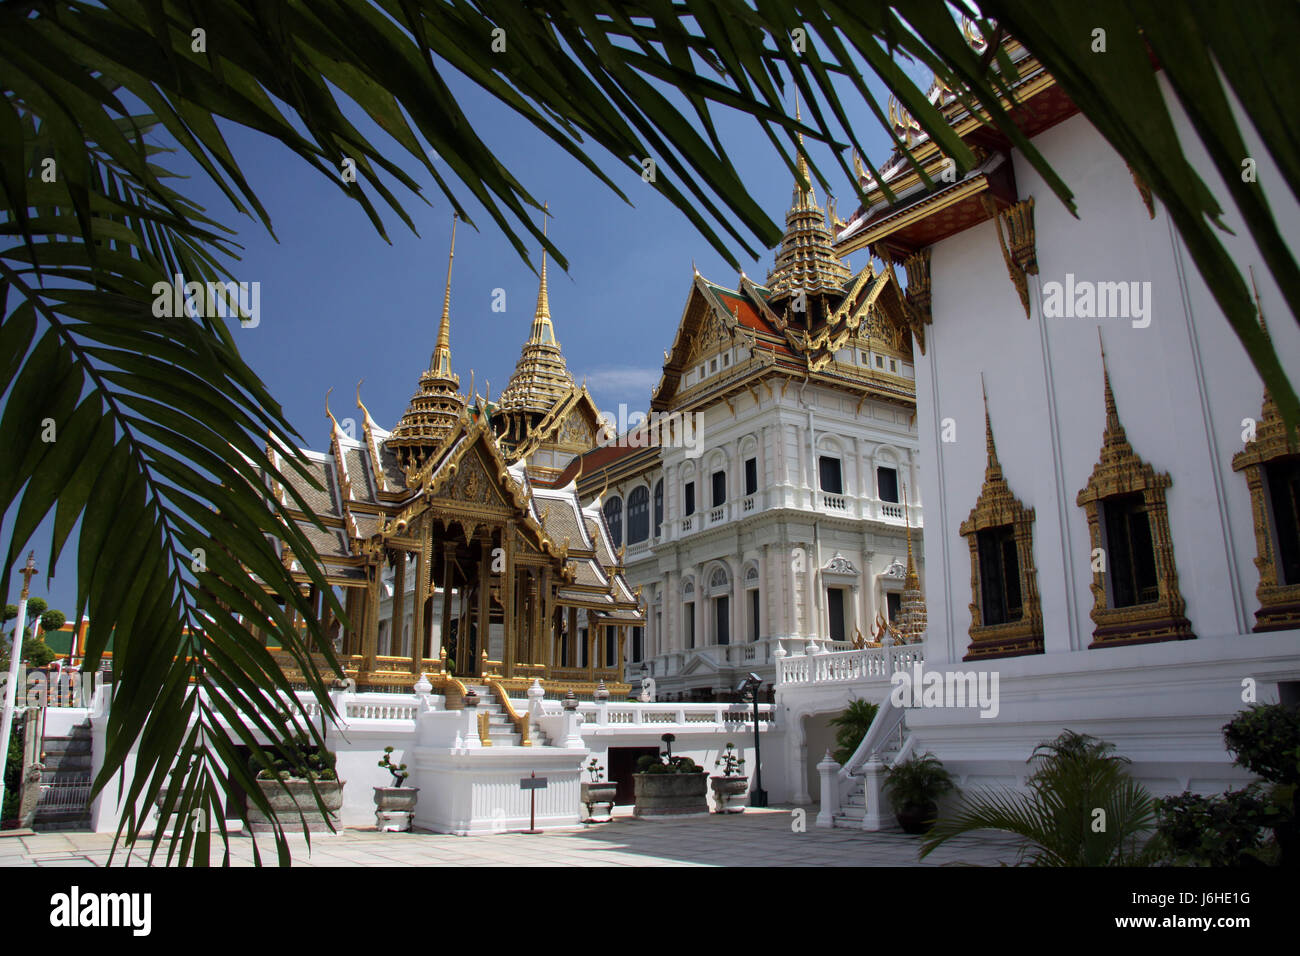 Asie Thaïlande Bangkok tour bâtiment bâtiments tower palace royal Asie Thaïlande Banque D'Images